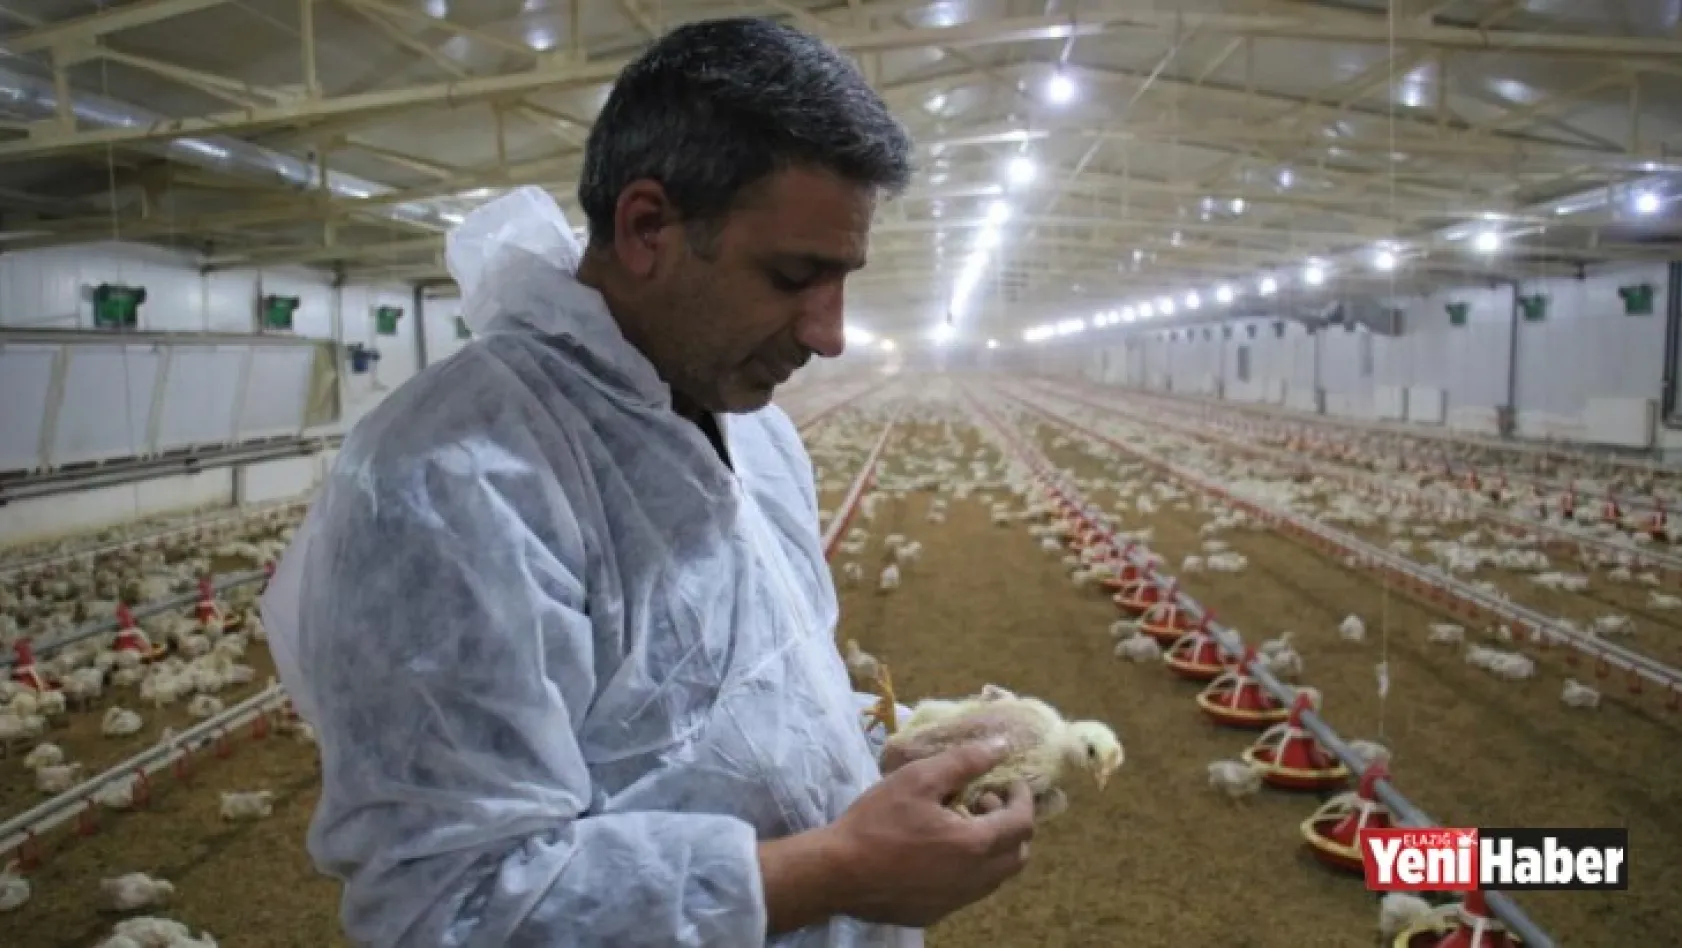 Devlet Desteği İle Çiftlik Kurdu, Yılda 300 Bin TL Kazanmaya Başladı